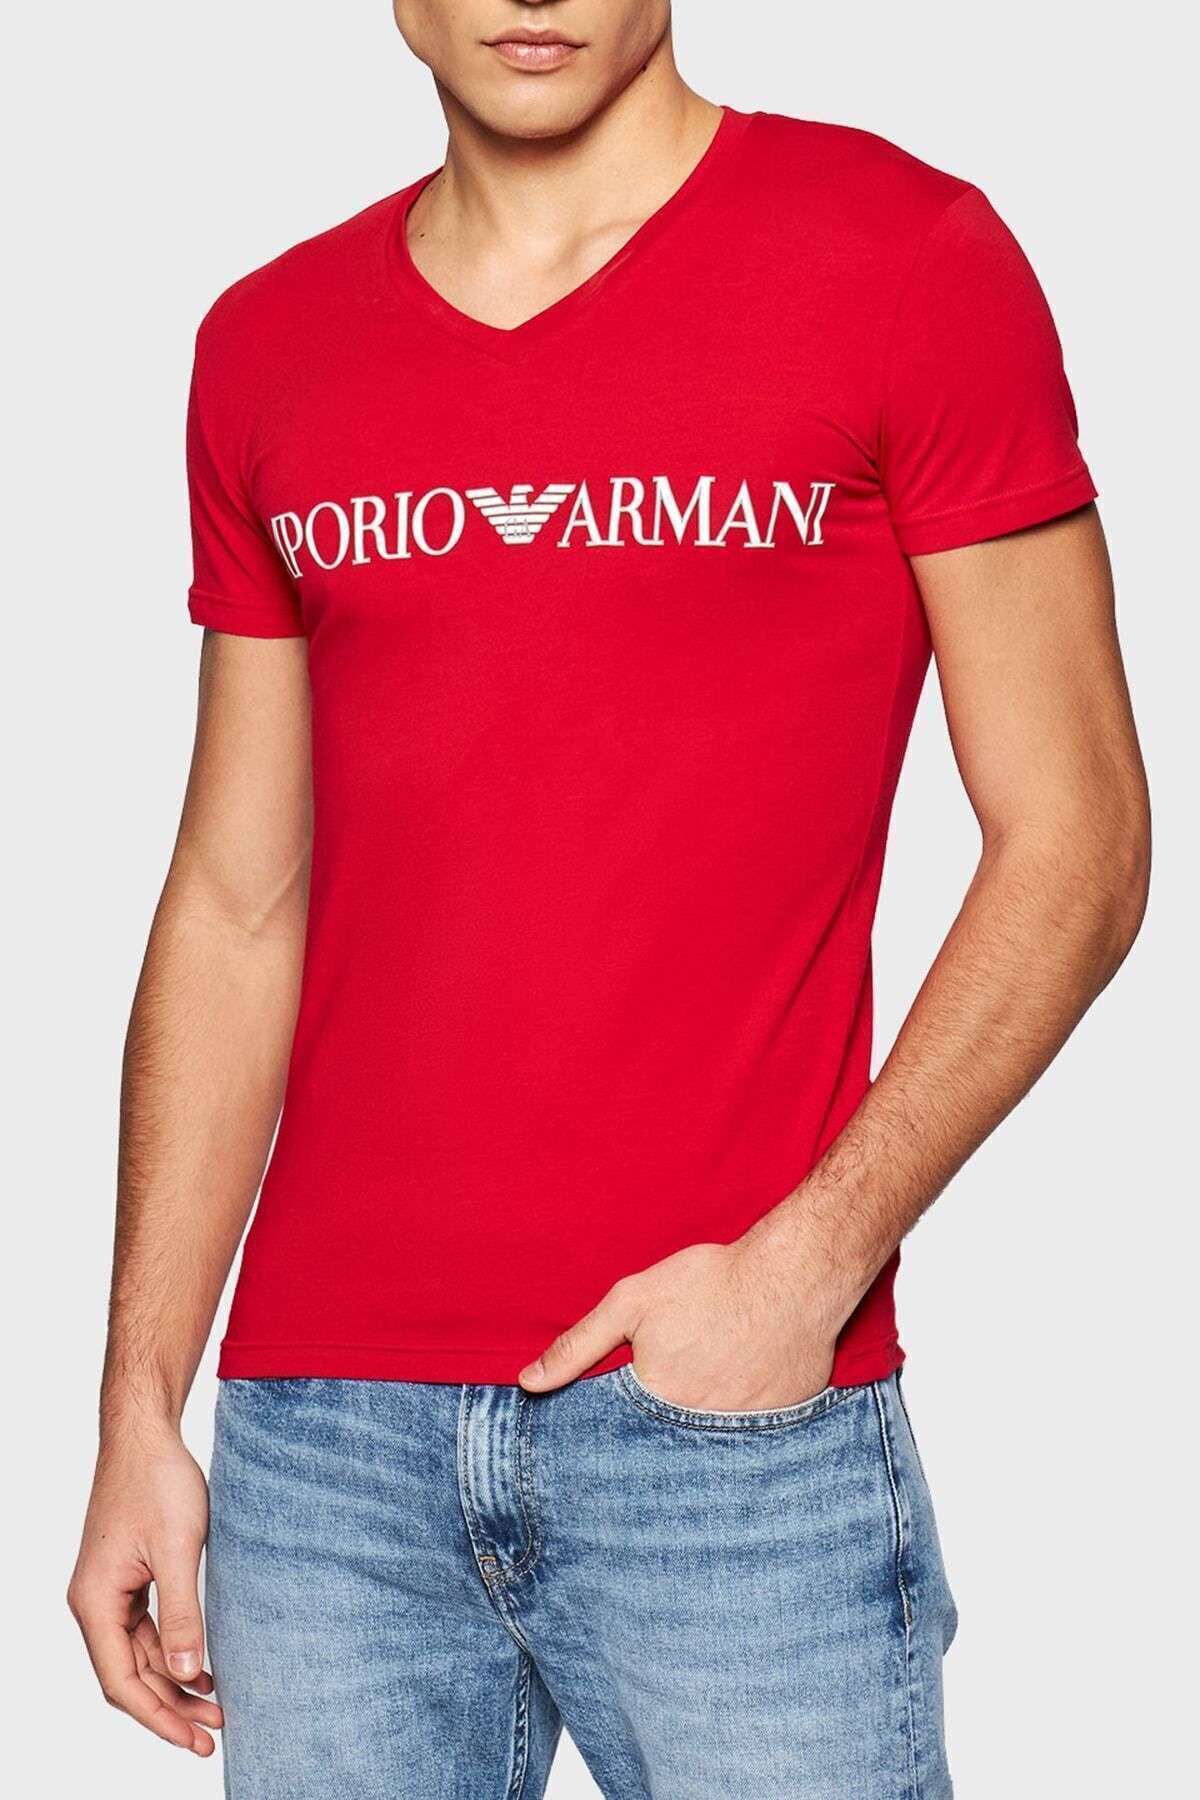 Emporio Armani Baskılı V Yaka Pamuklu T Shirt Erkek T Shirt S 110810 1p516 06574